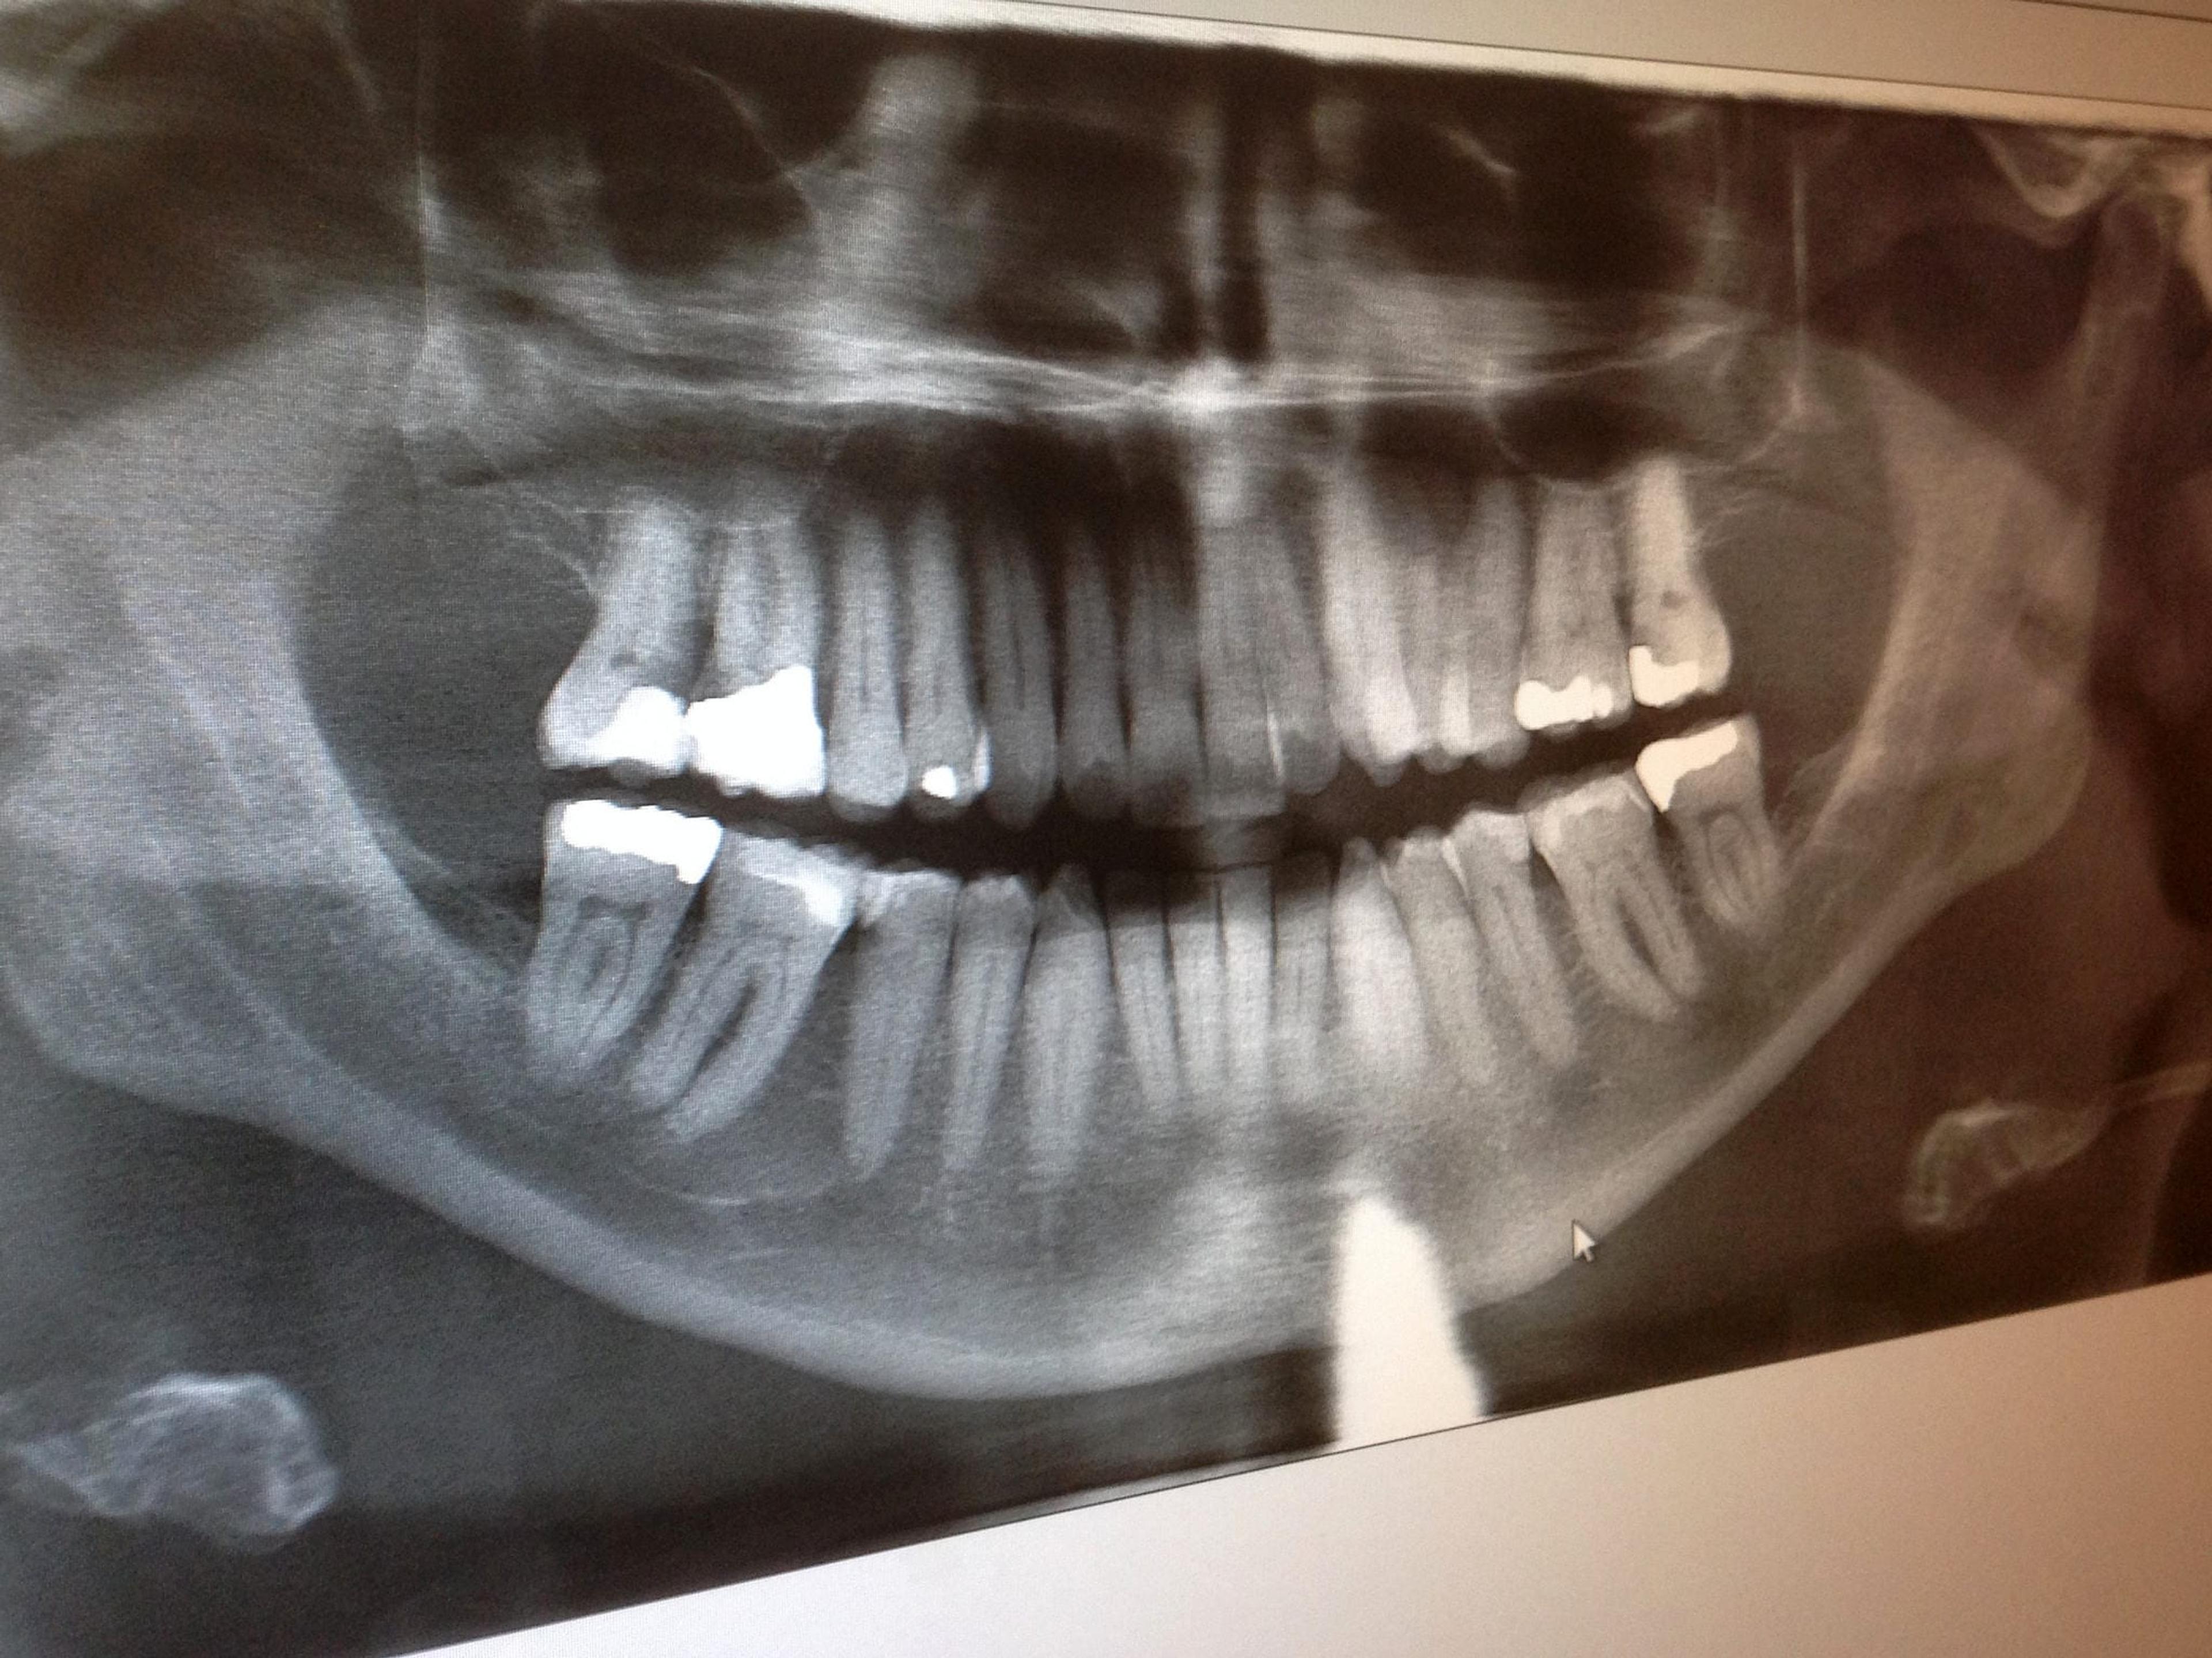 X-rays of Teeth